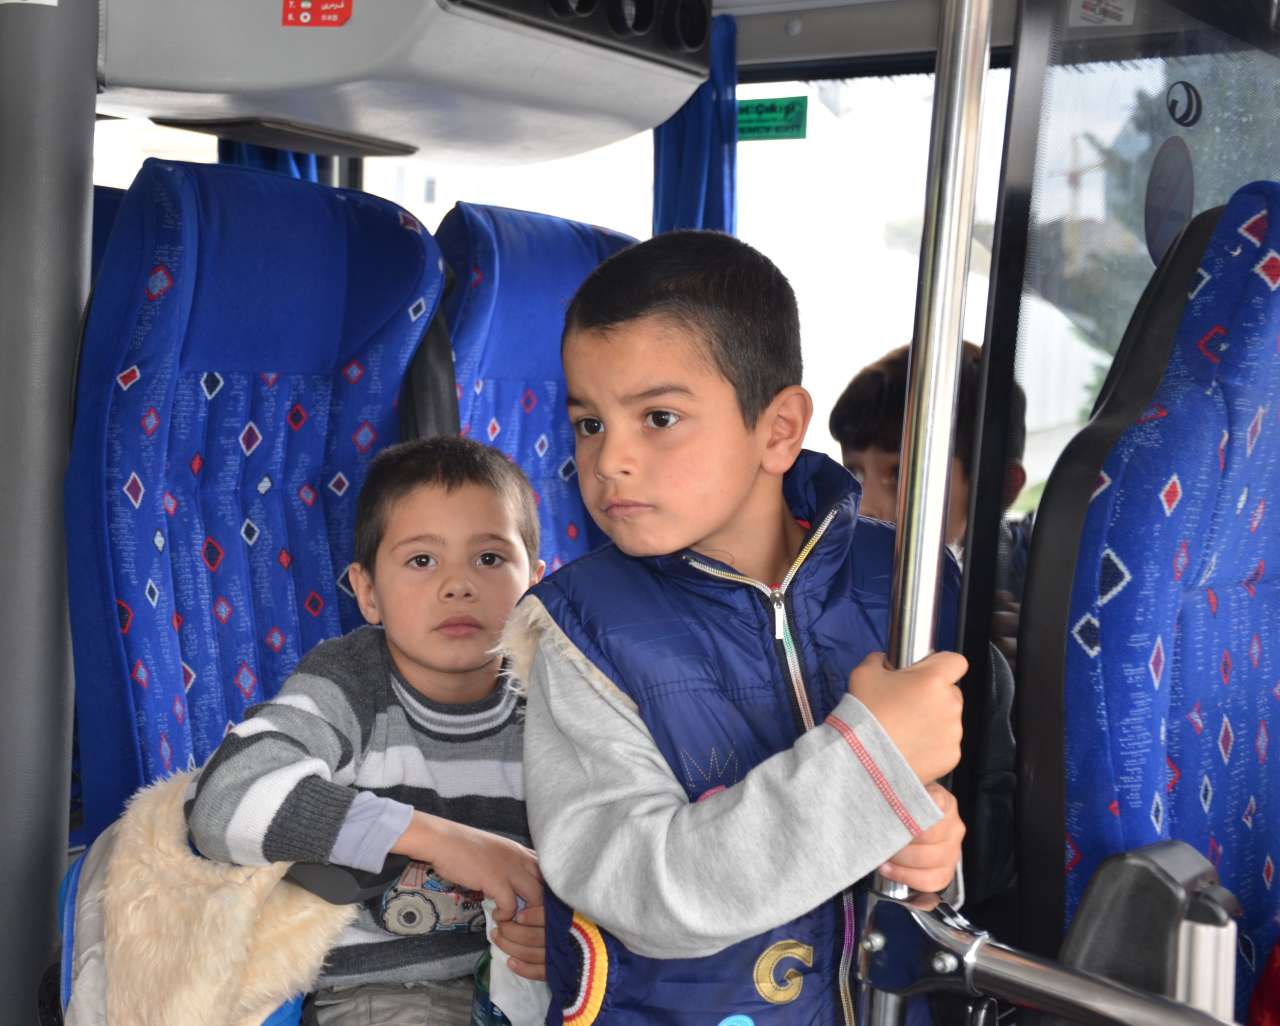 Ассоциация туризма Азербайджана провела благотворительную акцию для детей (ФОТО)